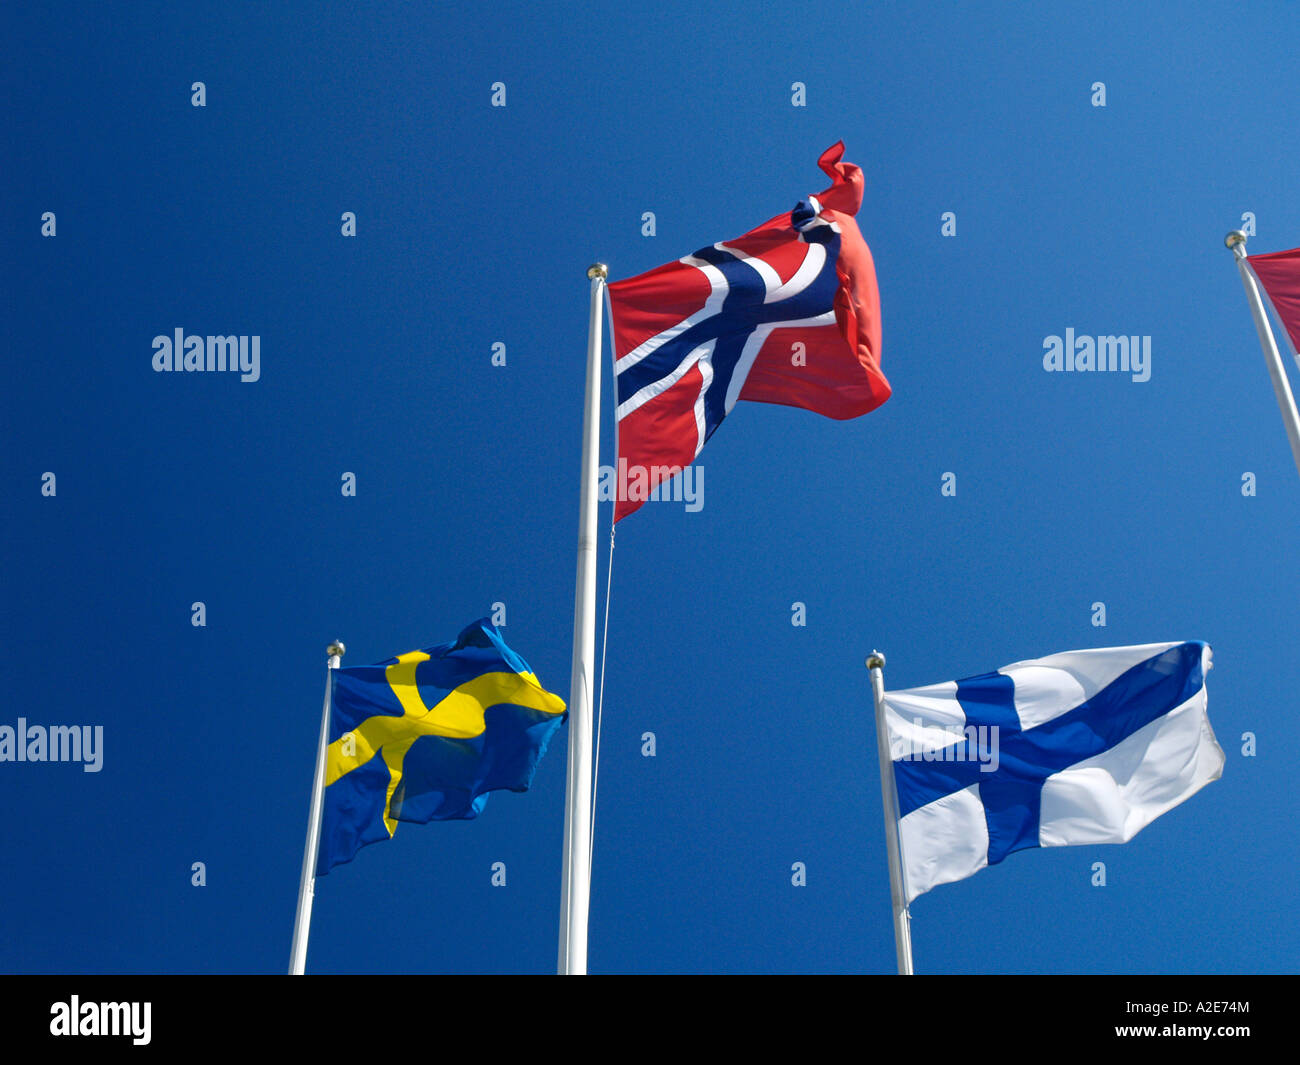 Flaggen der nordischen Länder, Norwegen, Schweden, Finnland Stockfoto